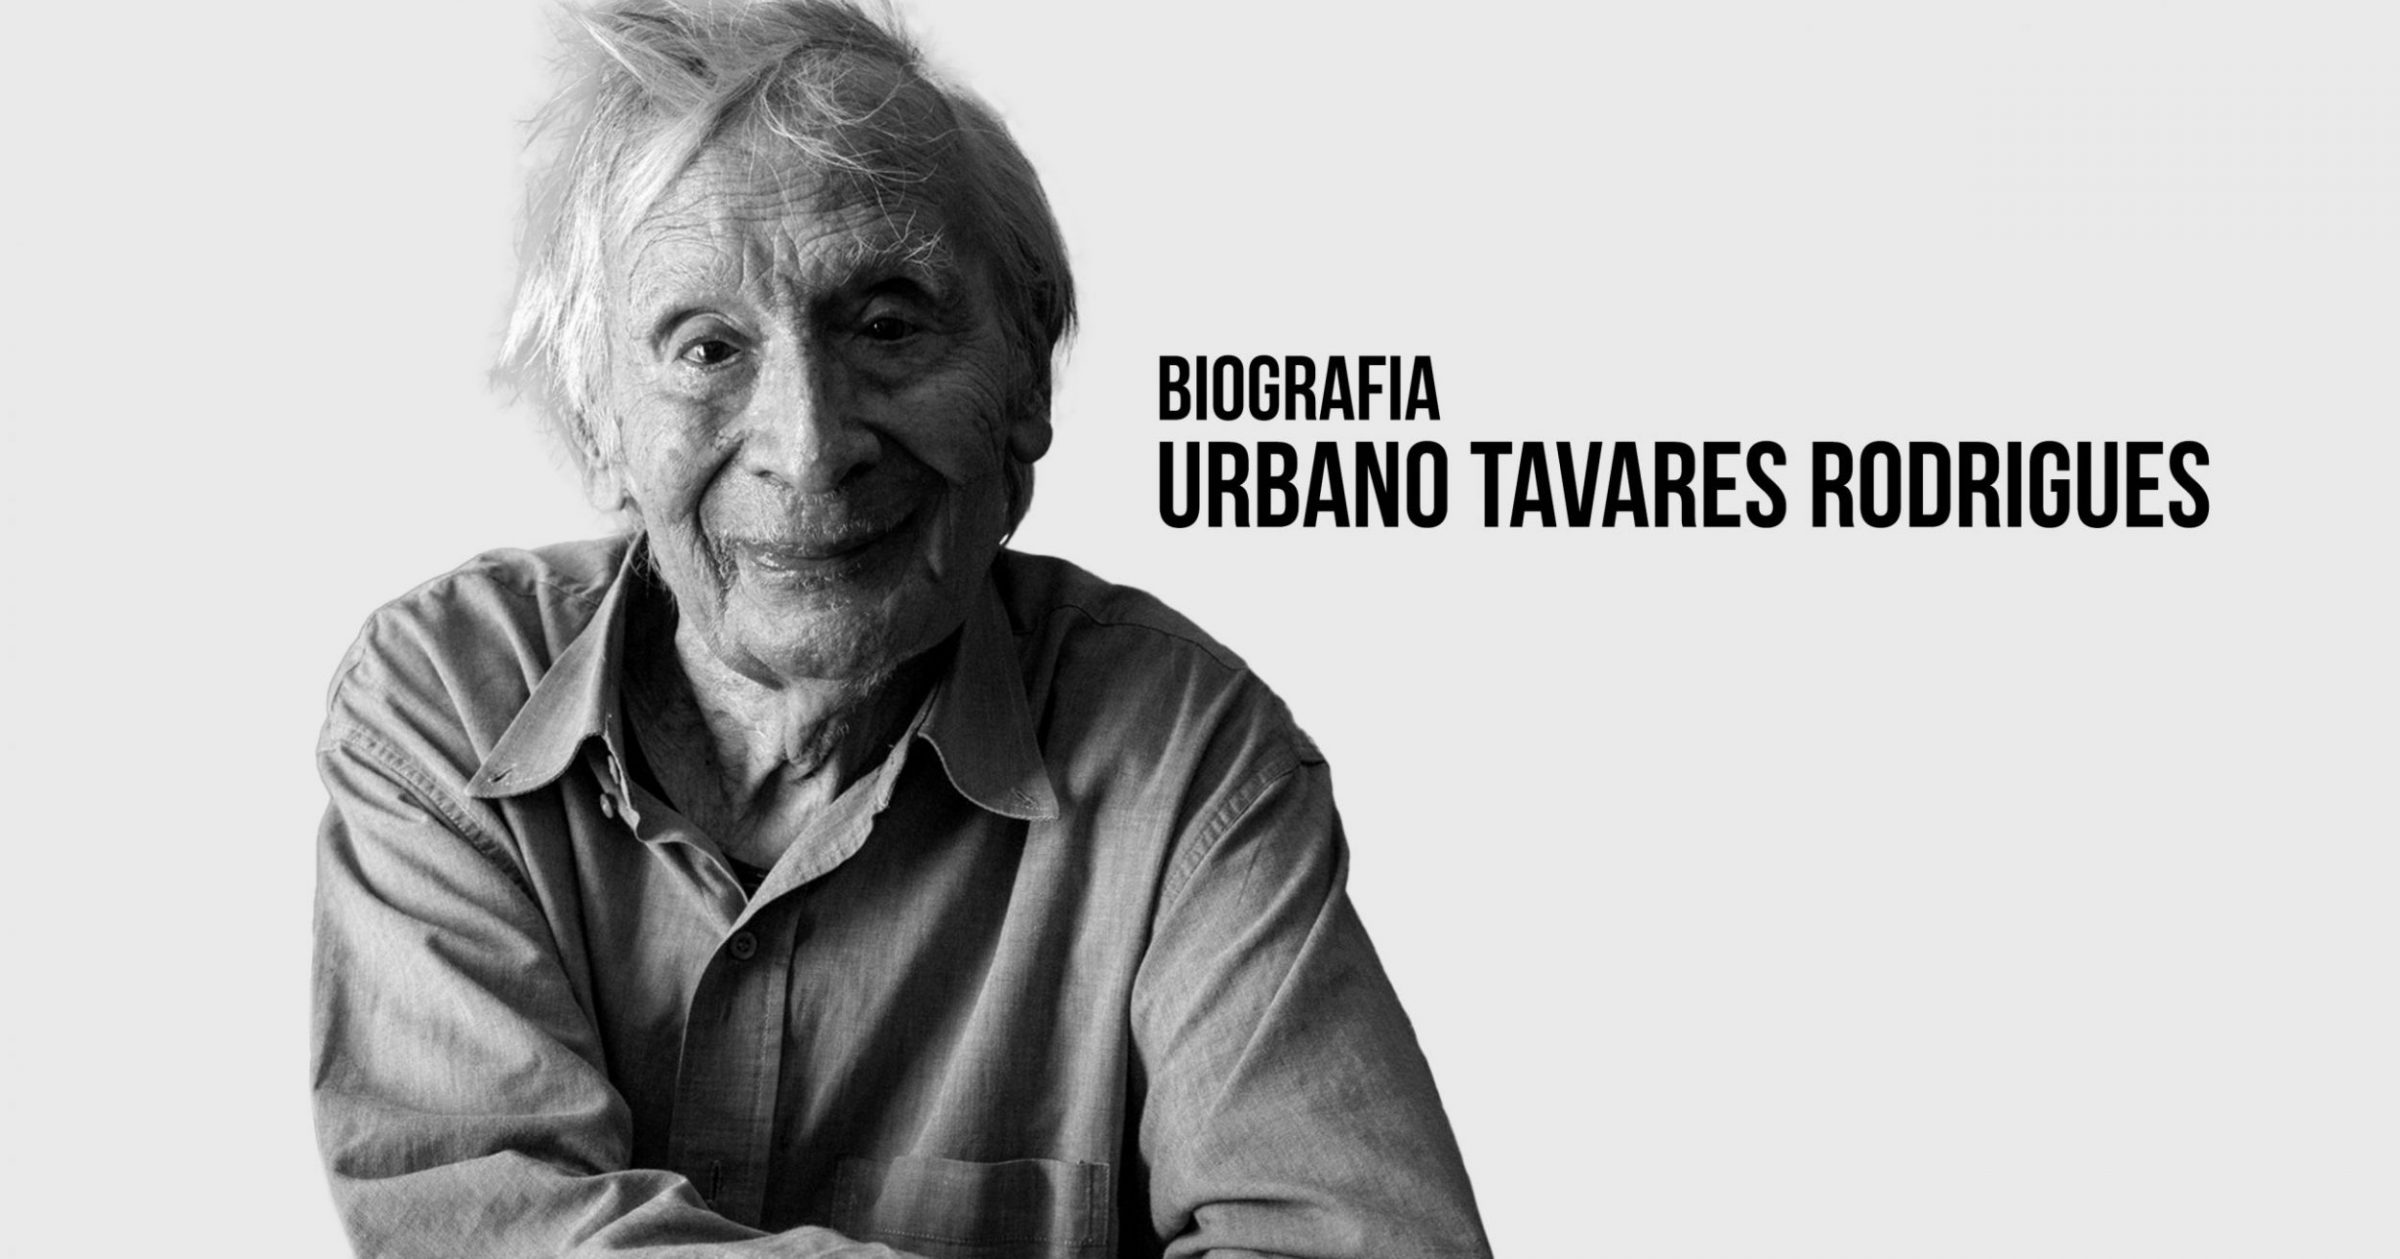 Urbano Tavares Rodrigues